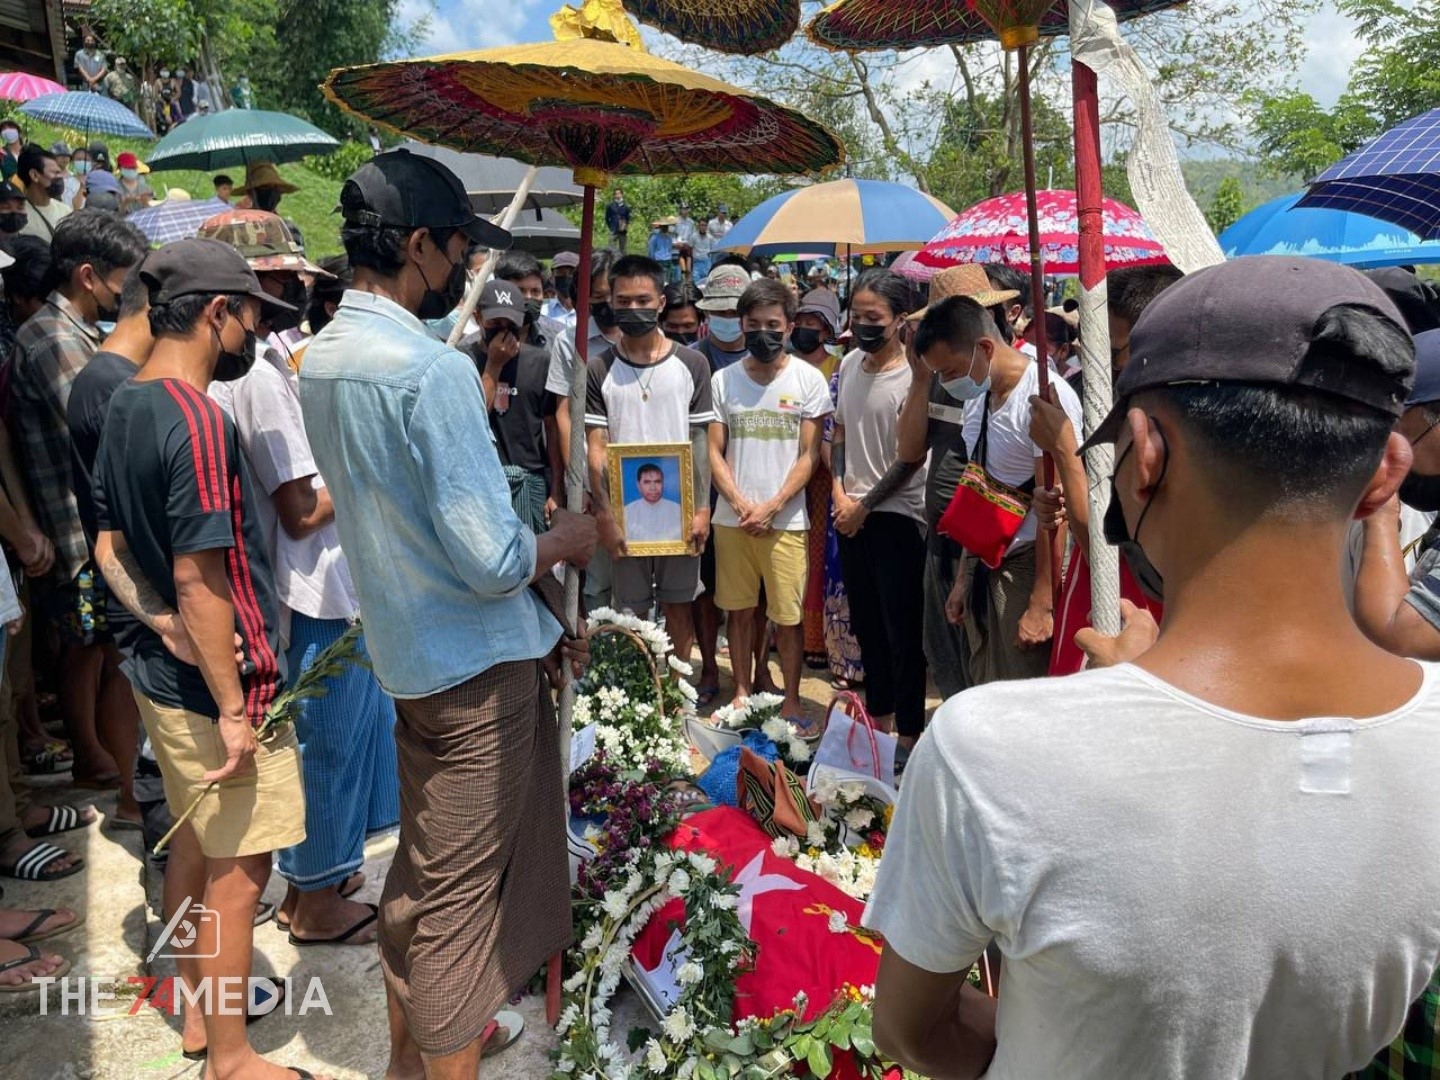 ဖားကန့် အေးမြသာယာ ကျေးရွာအုပ်စုတွင် မေလ ၃၁ ရက်နေ့က သေနတ်ဖြင့် ပစ်သတ်ခံခဲ့ရသည့် NLD ပါတီဝင် မနကျေးရွာအုပ်ချုပ်ရေးမှူး ဦးတင်စိုး၏ ဈာပန